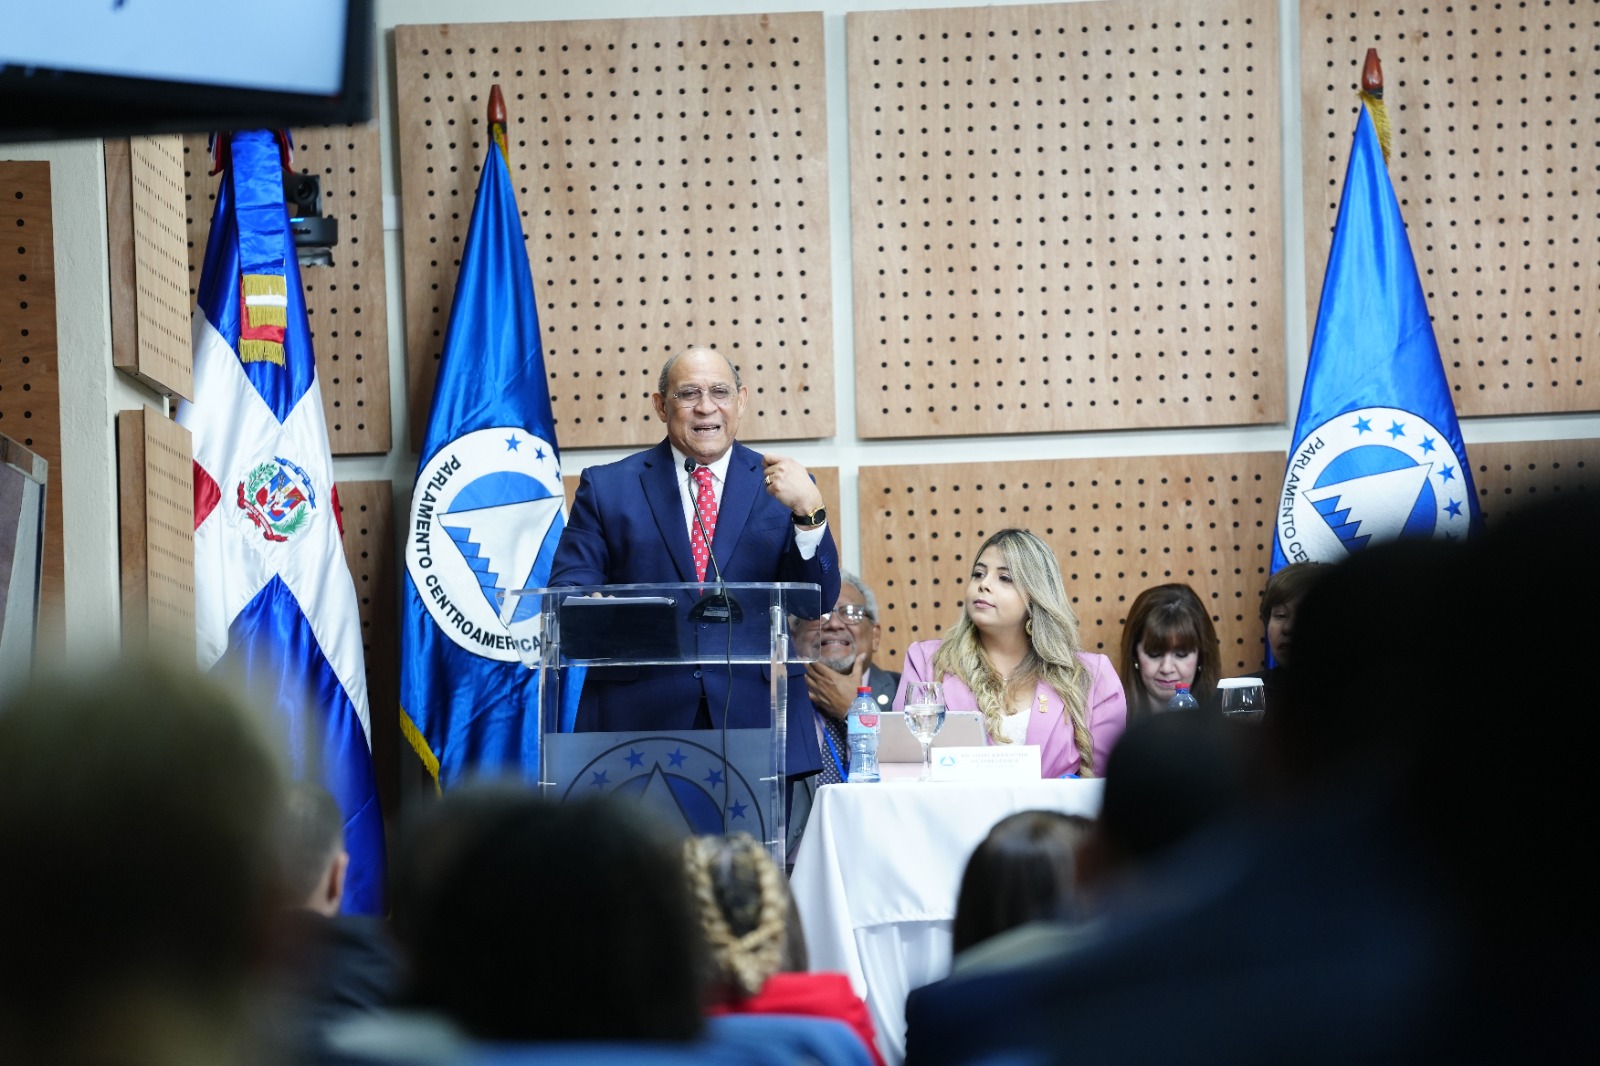 REPÚBLICA DOMINICANA: Director de INFOTEP propone ante los miembros del PARLACEN una currícula de formación para la región centroamericana